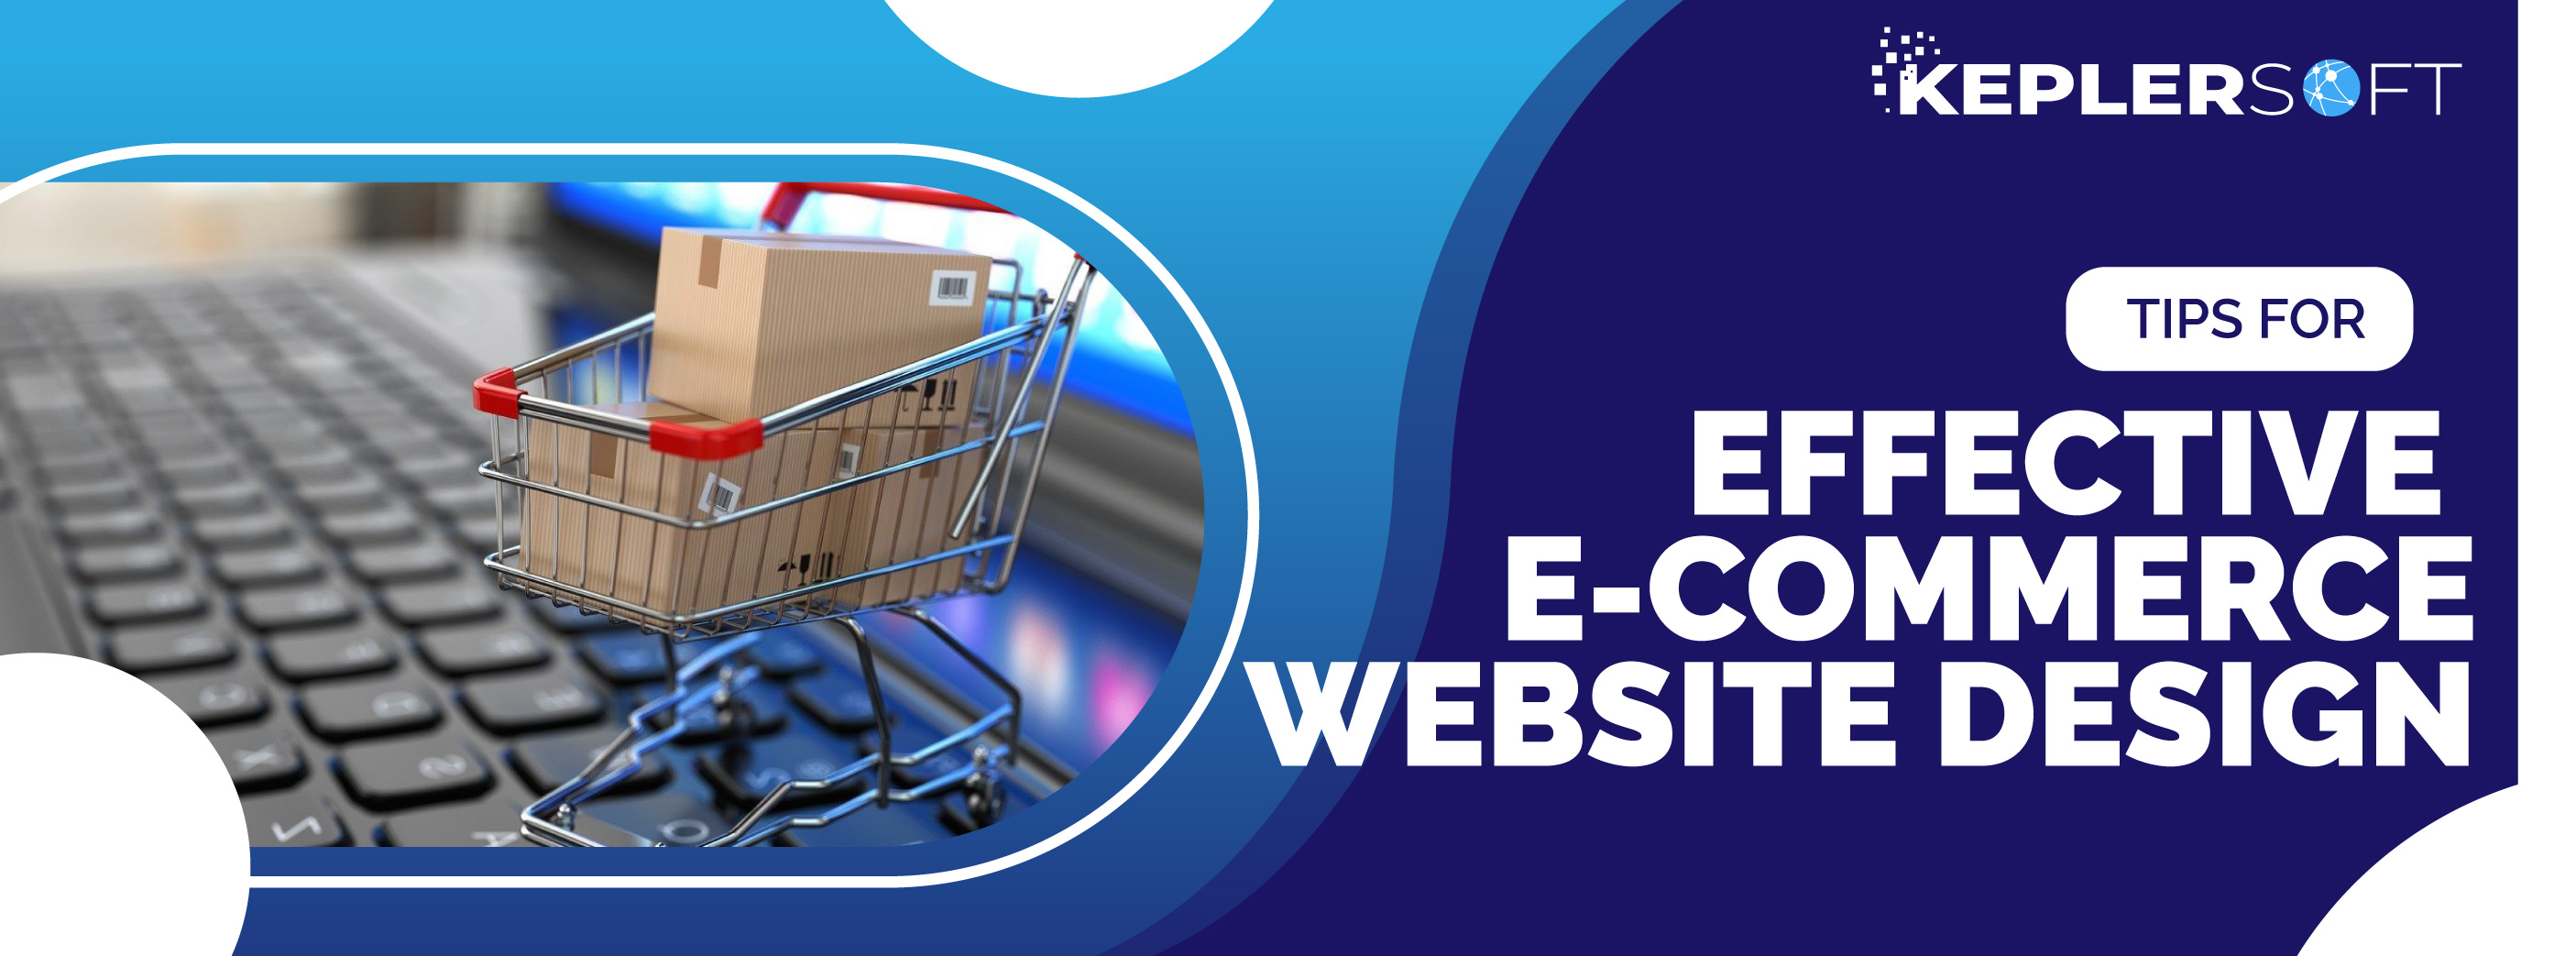 Tips For Effective E-Commerce Website Design